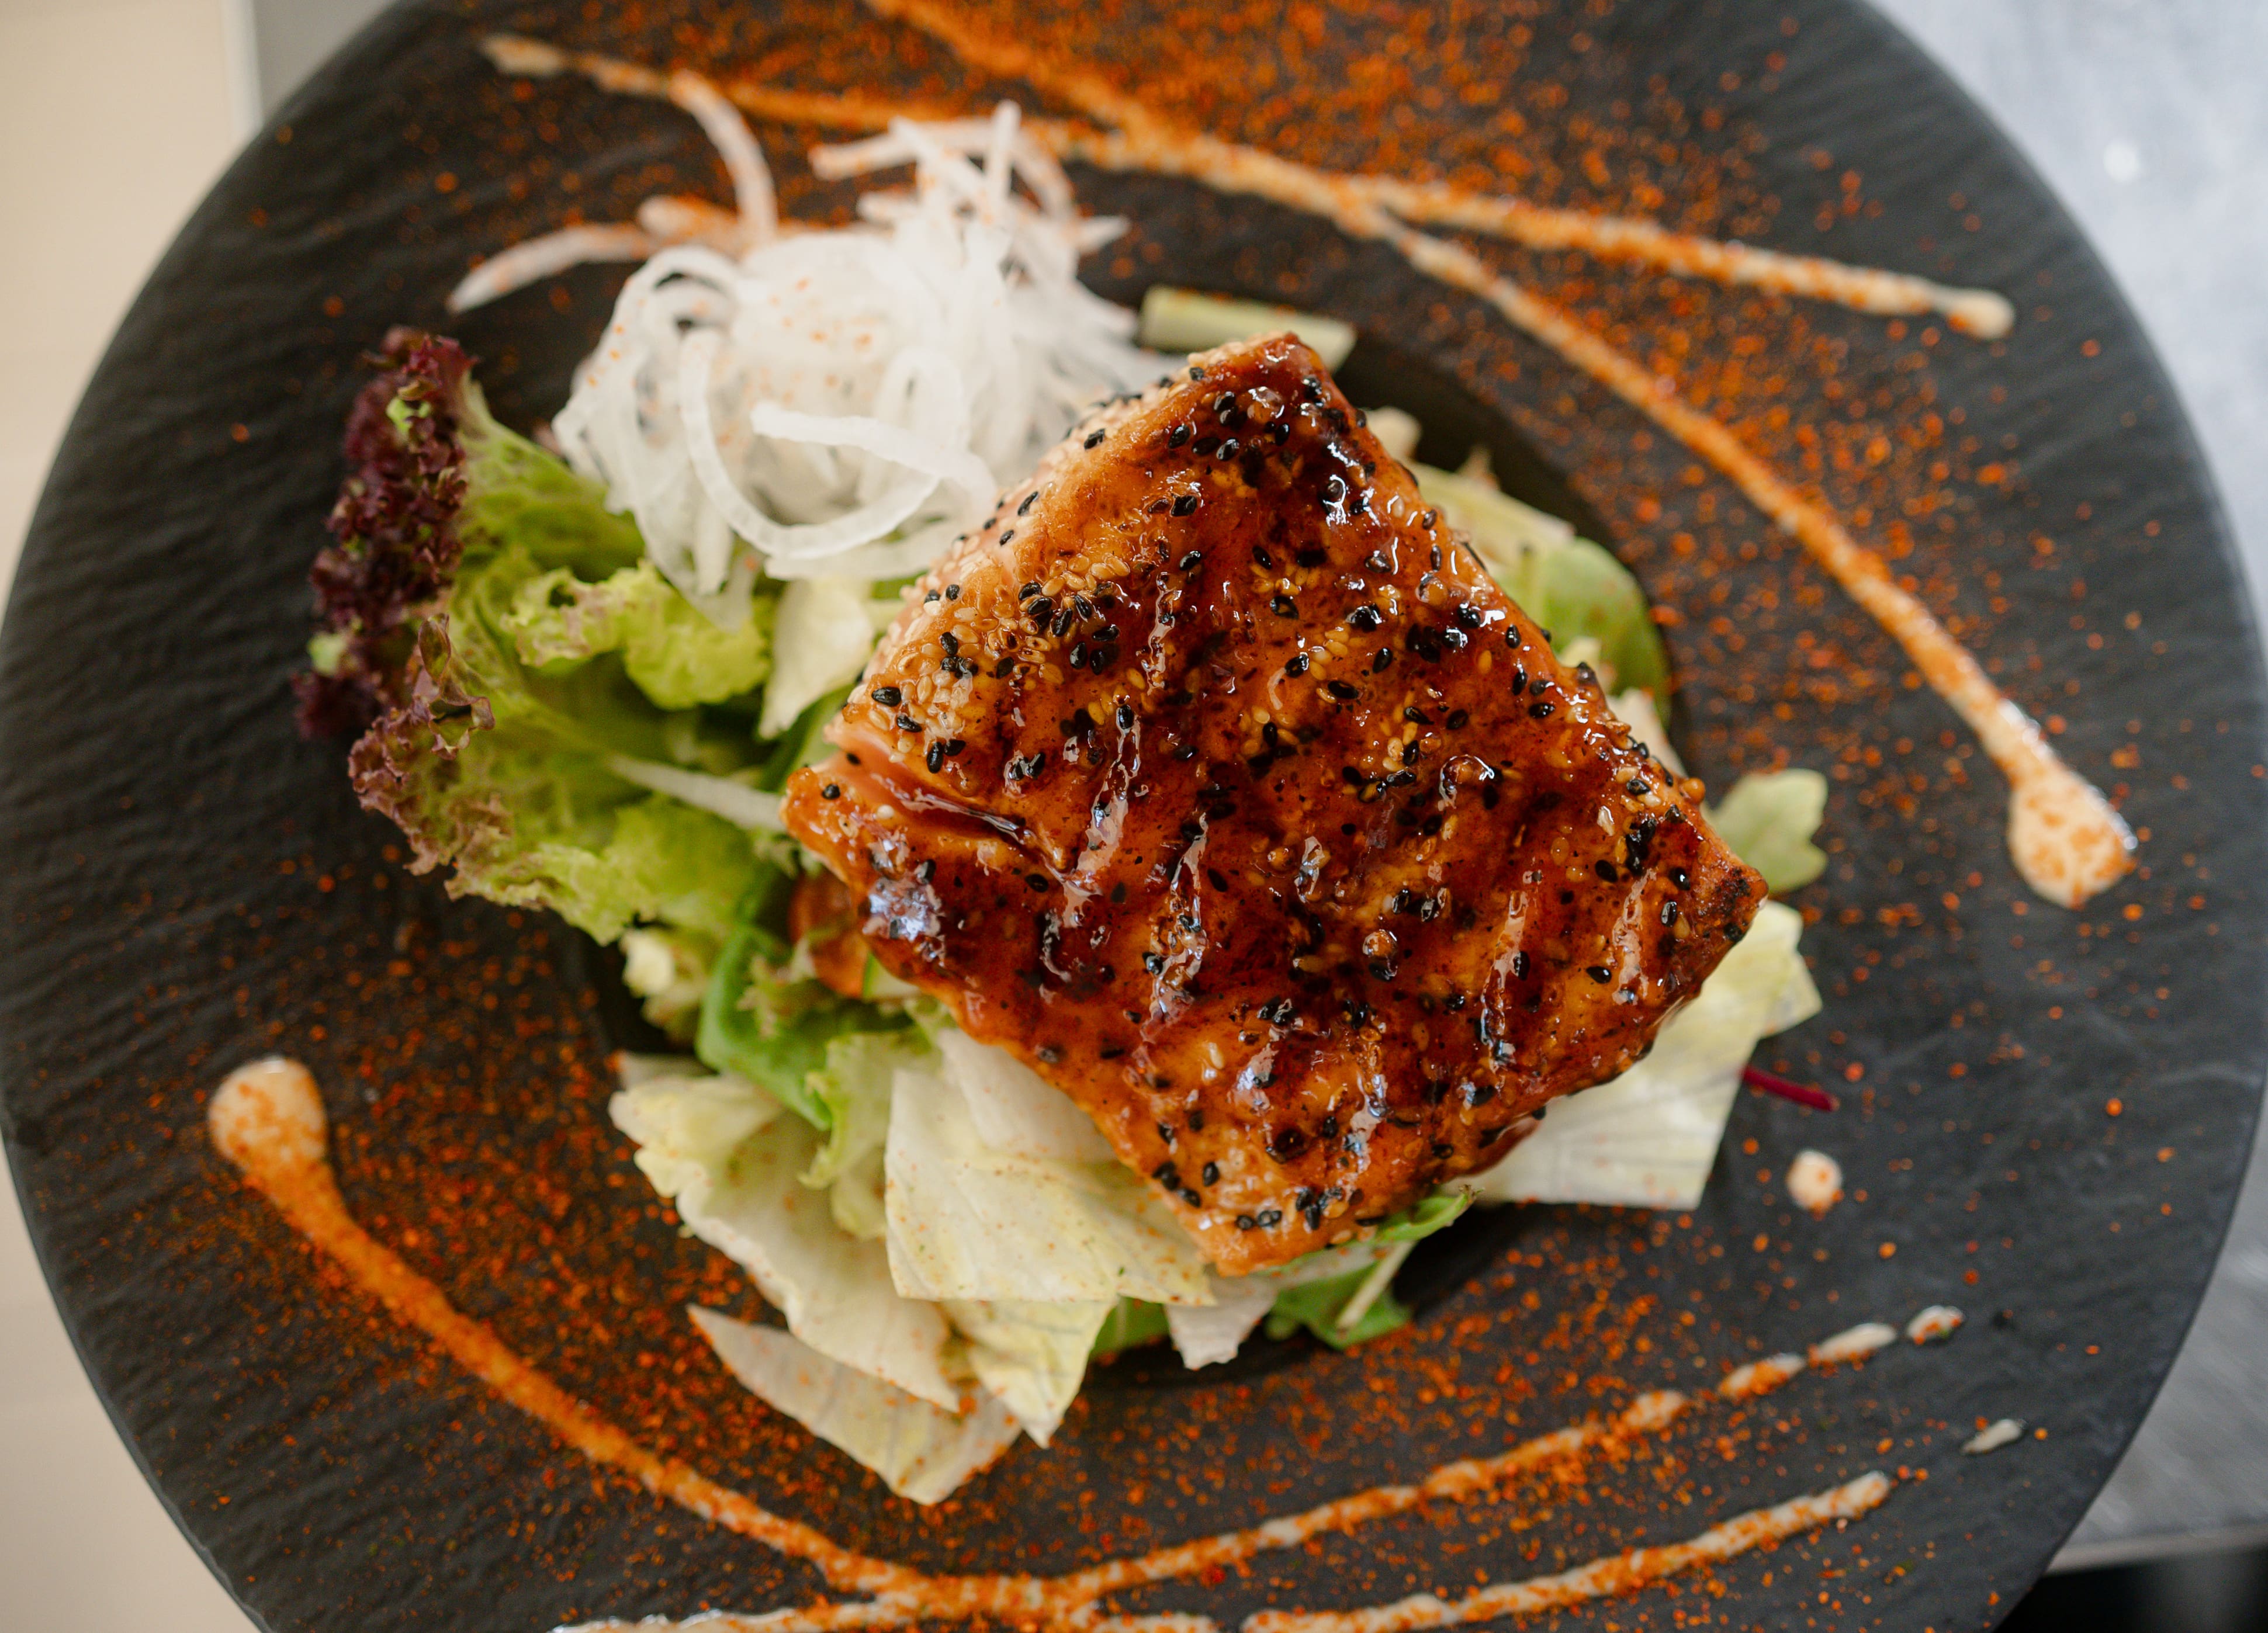 Gegrilltes Lachsfilet auf einem Salatbett garniert mit Teriyaki soße von oben geschossen